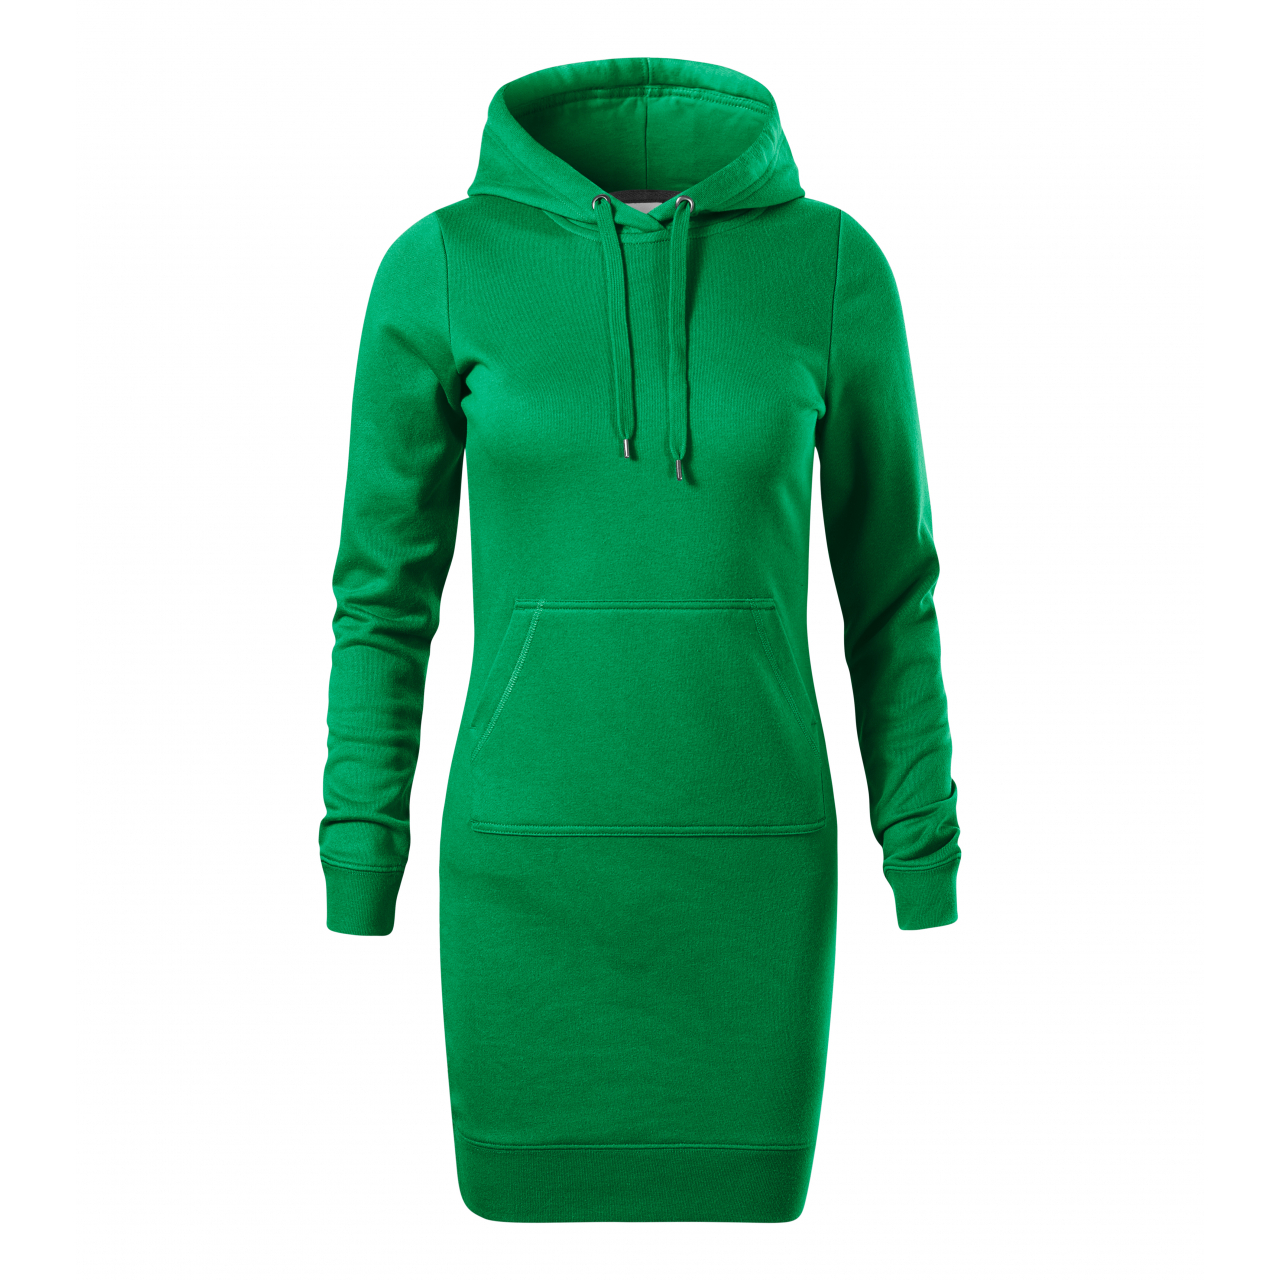 Šaty dámské Malfini Snap - zelené, L